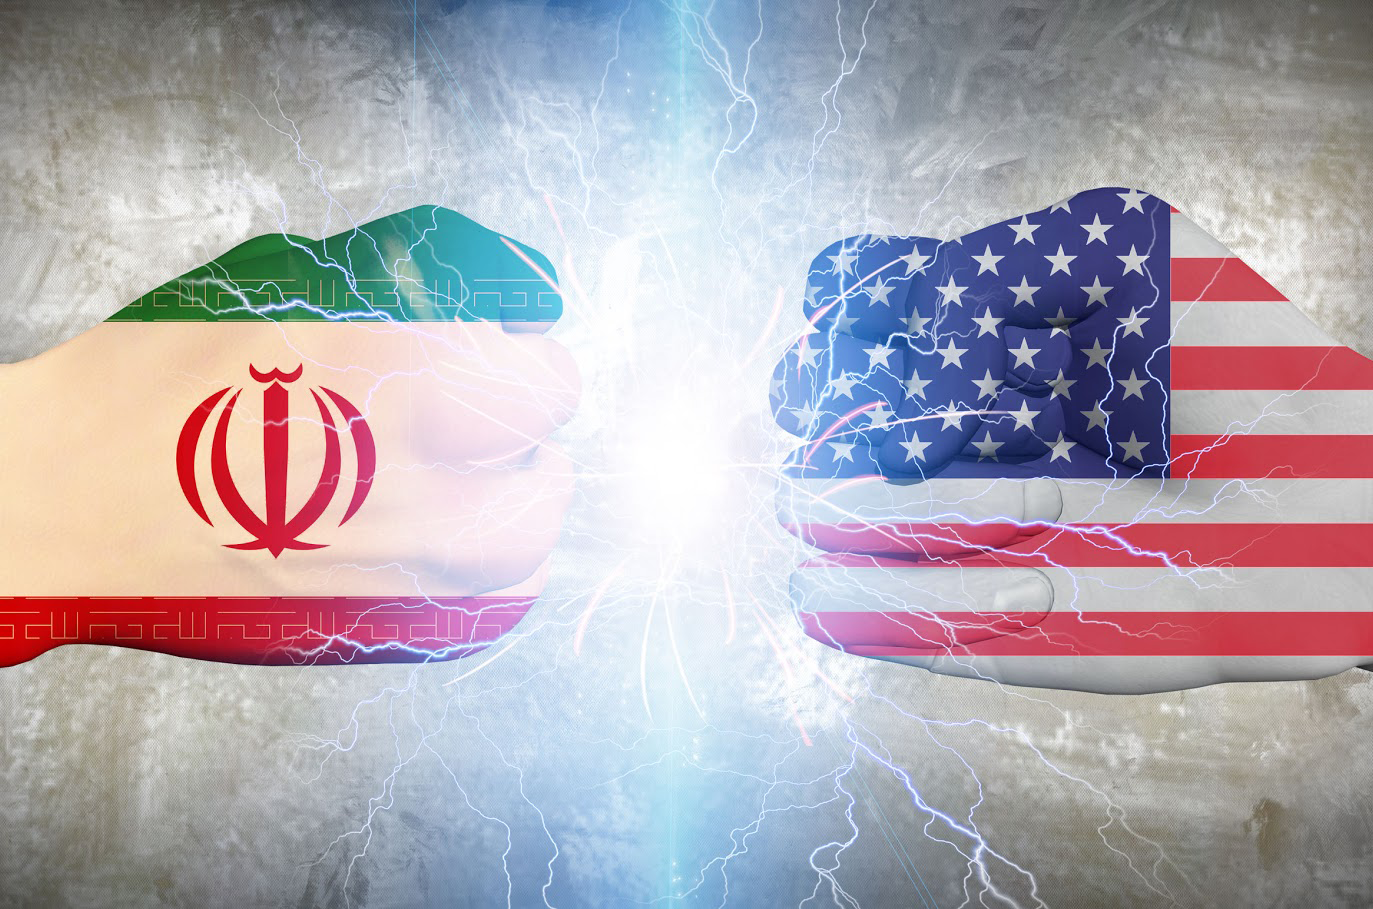 واشنگتن‌پست: آمریکا می‌تواند کانال‌های اروپایی متعامل با ایران را تحریم کند